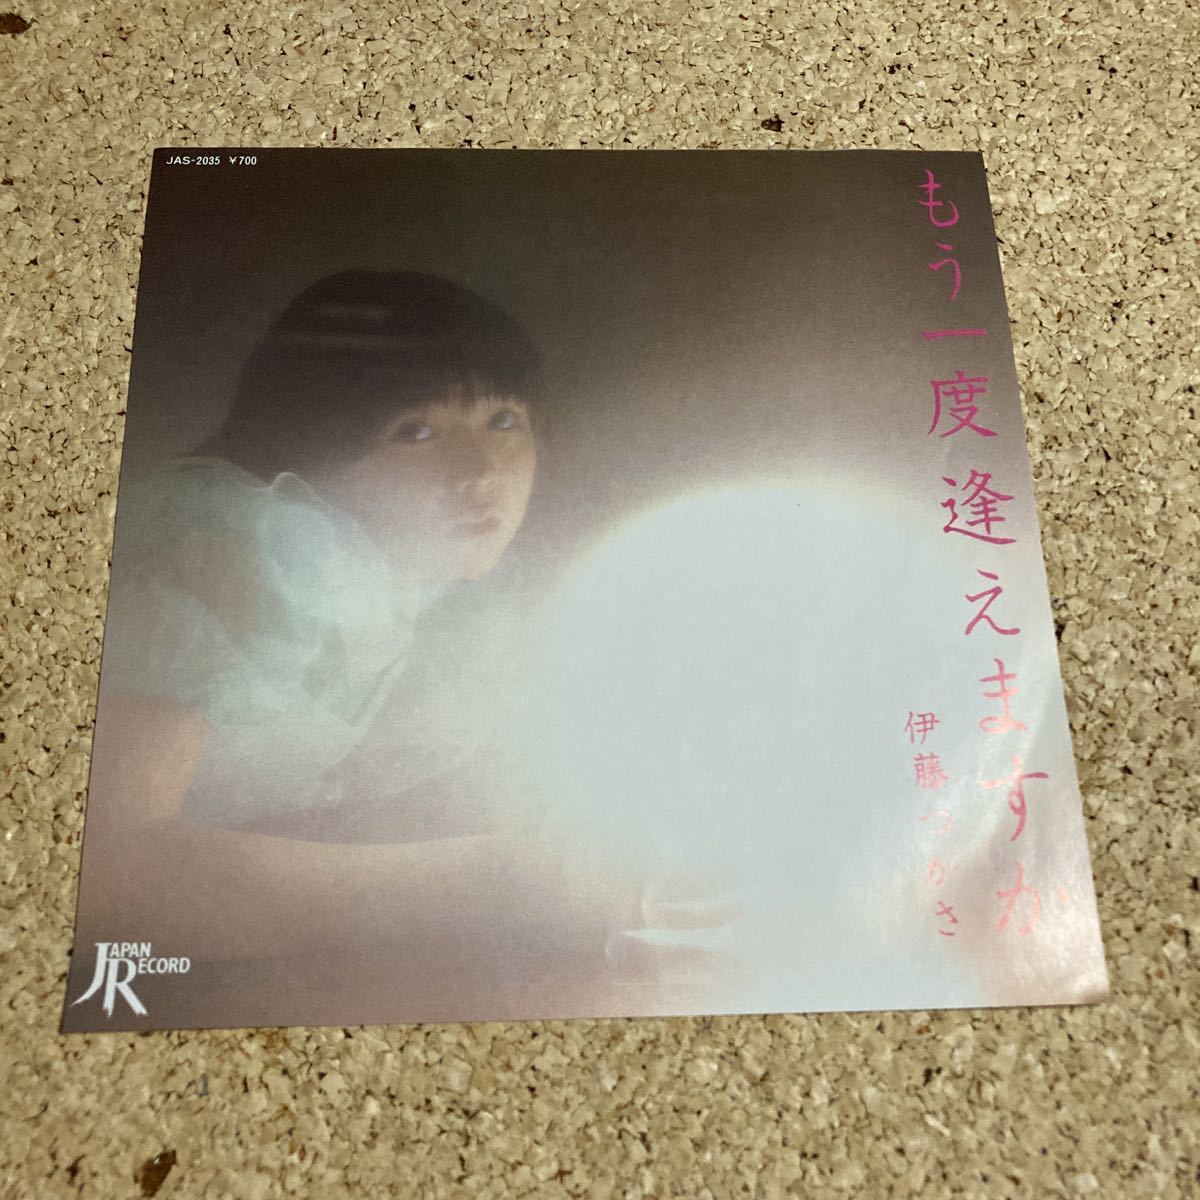  Ito Tsukasa / already once ... ./ I Bluebird / 7 record 